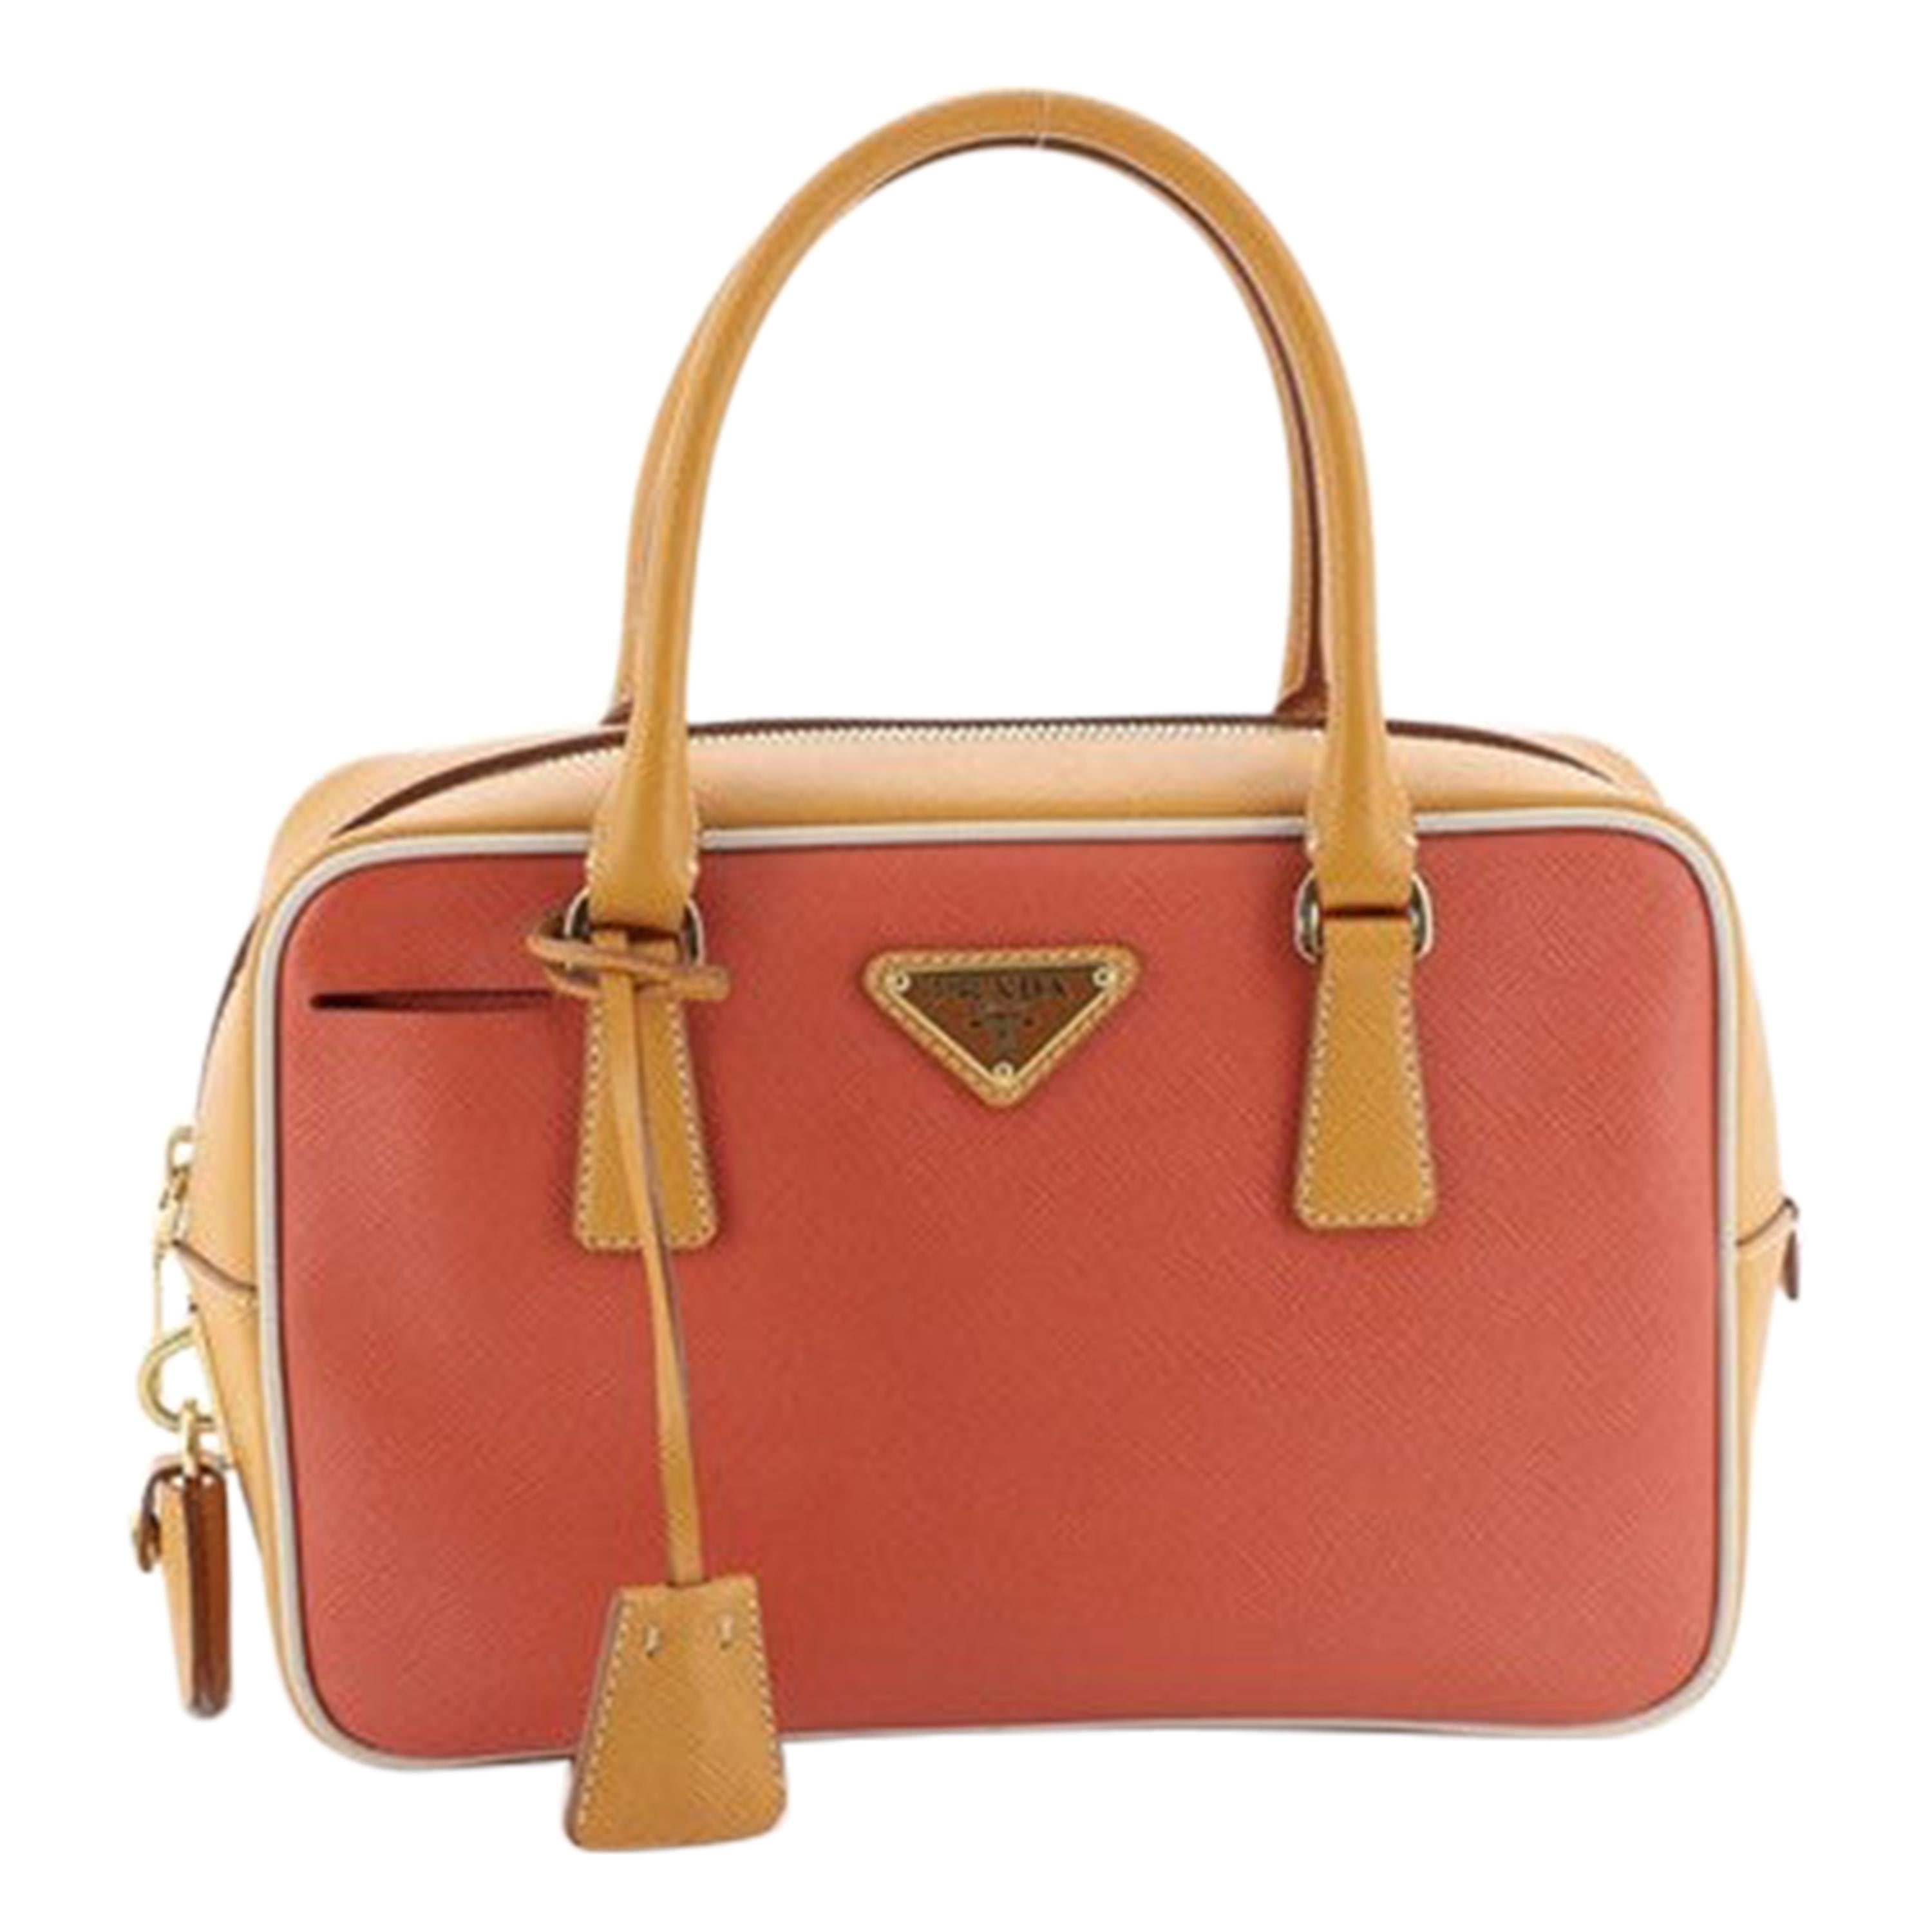 Prada Convertible Bauletto Bag Multicolor Saffiano Leather Small 